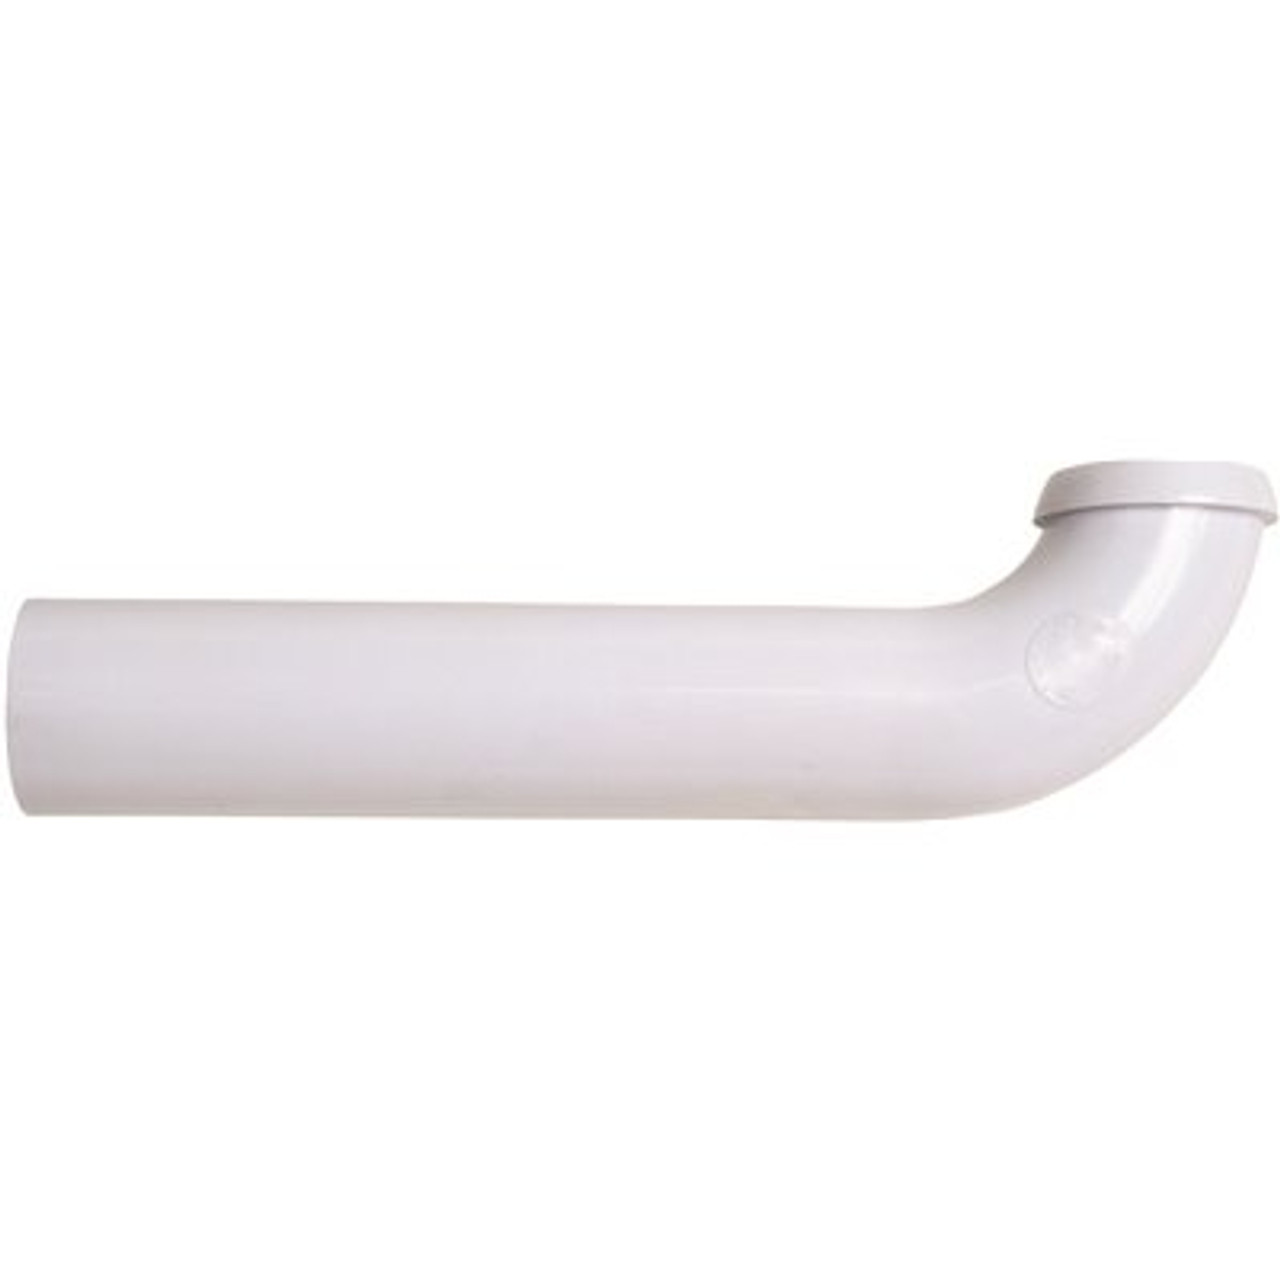 Oatey 1-1/2 in. White Plastic Sink Drain Wall Tube